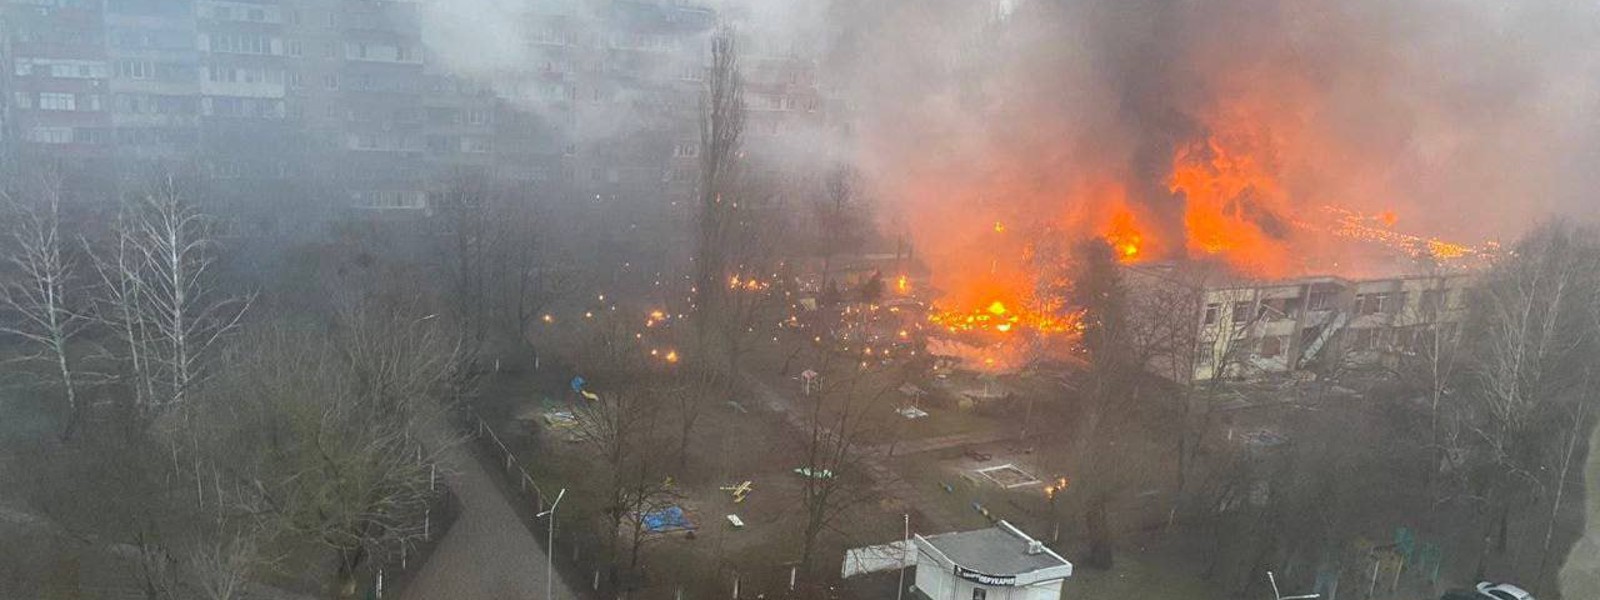 Ukraine Interior Minister dies in helicopter crash